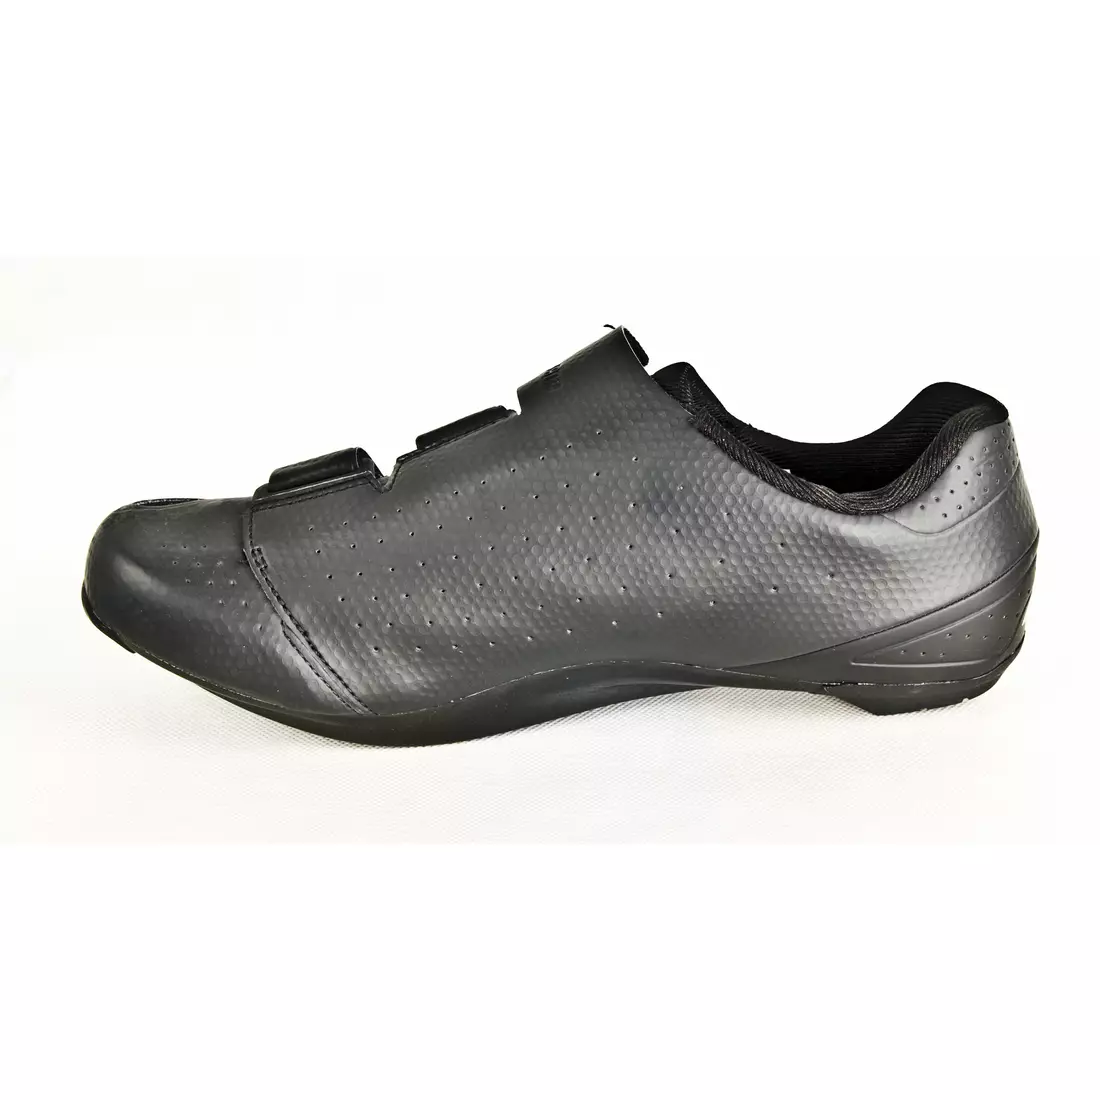 SHIMANO SHRP500SL road cycling shoes, black